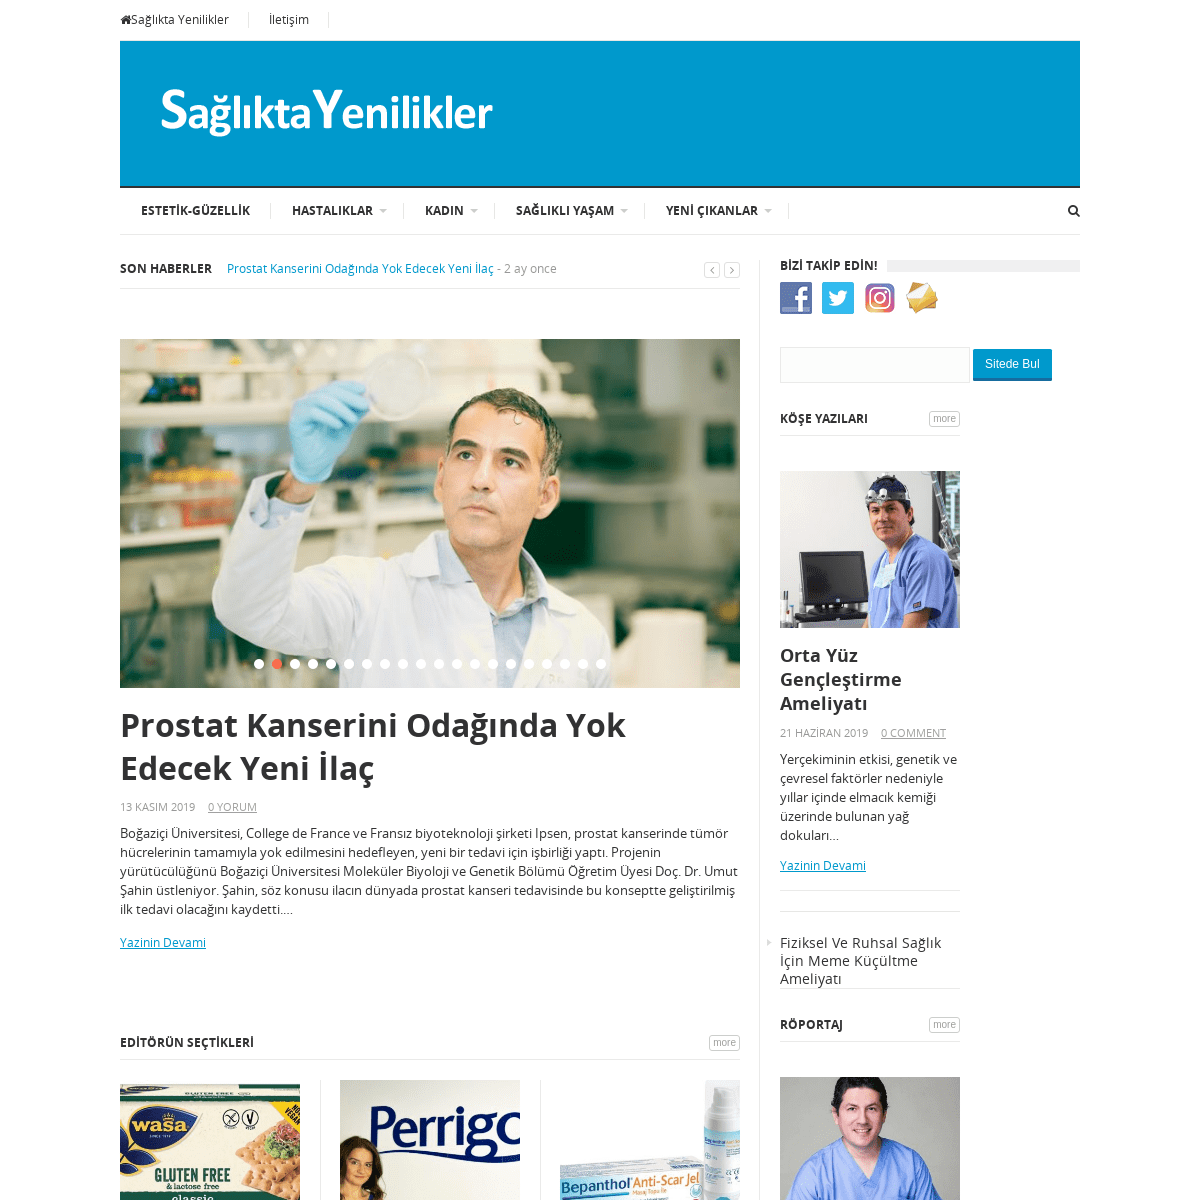 A complete backup of sagliktayenilikler.com